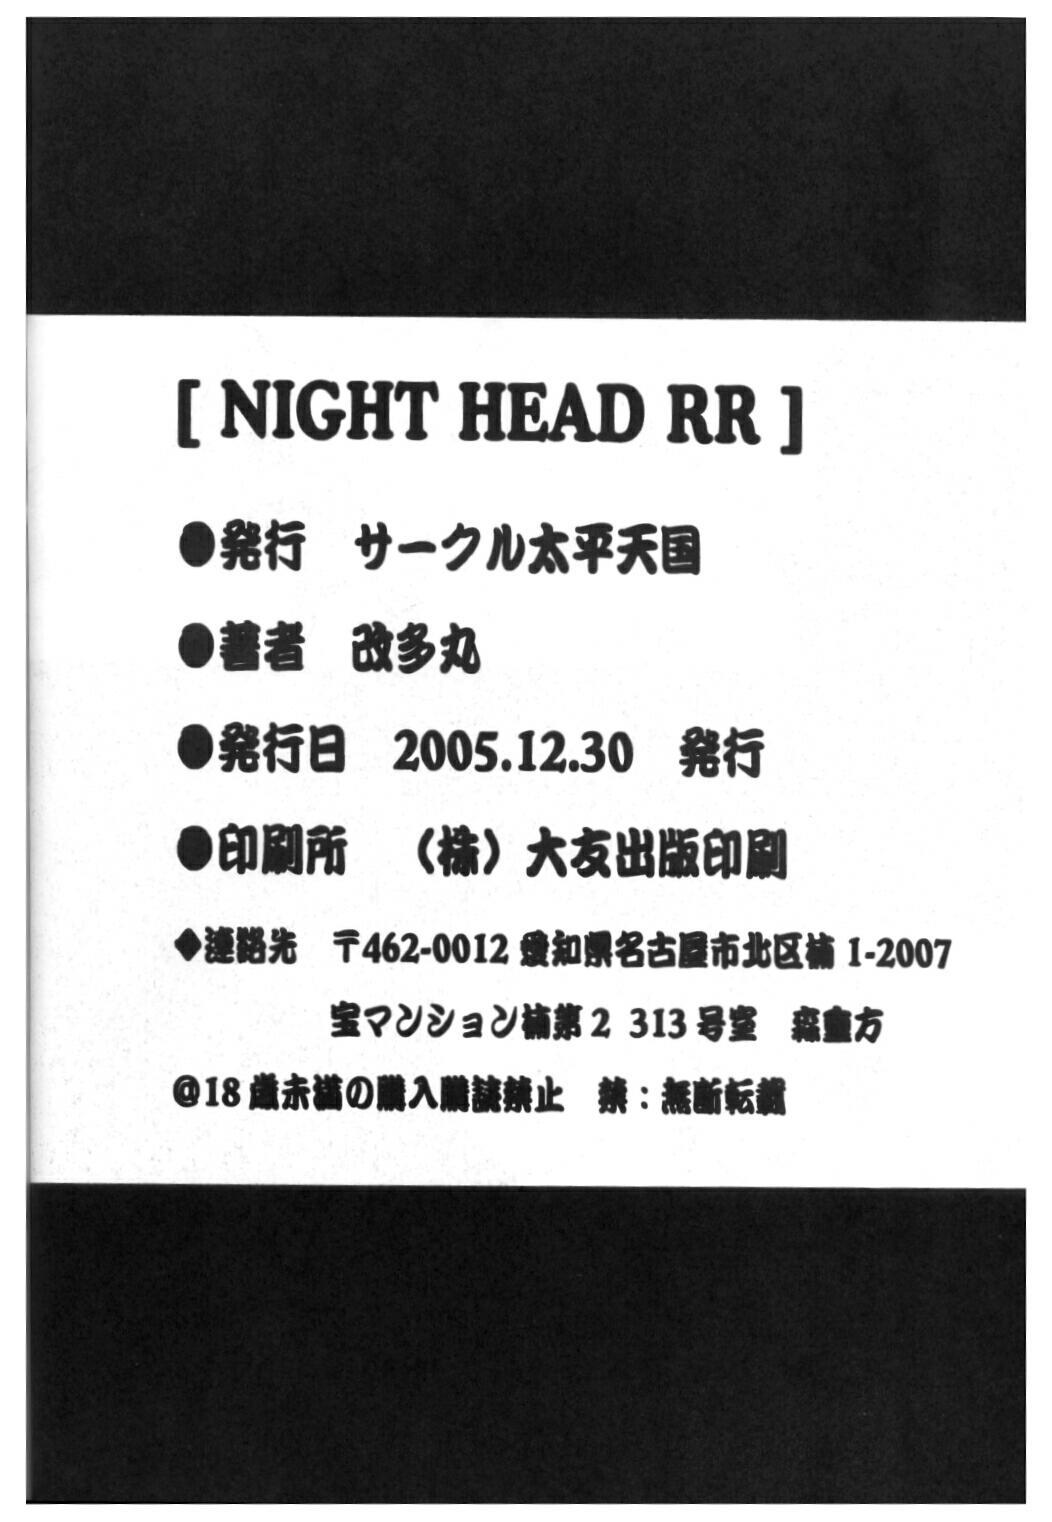 Night Head RR 28